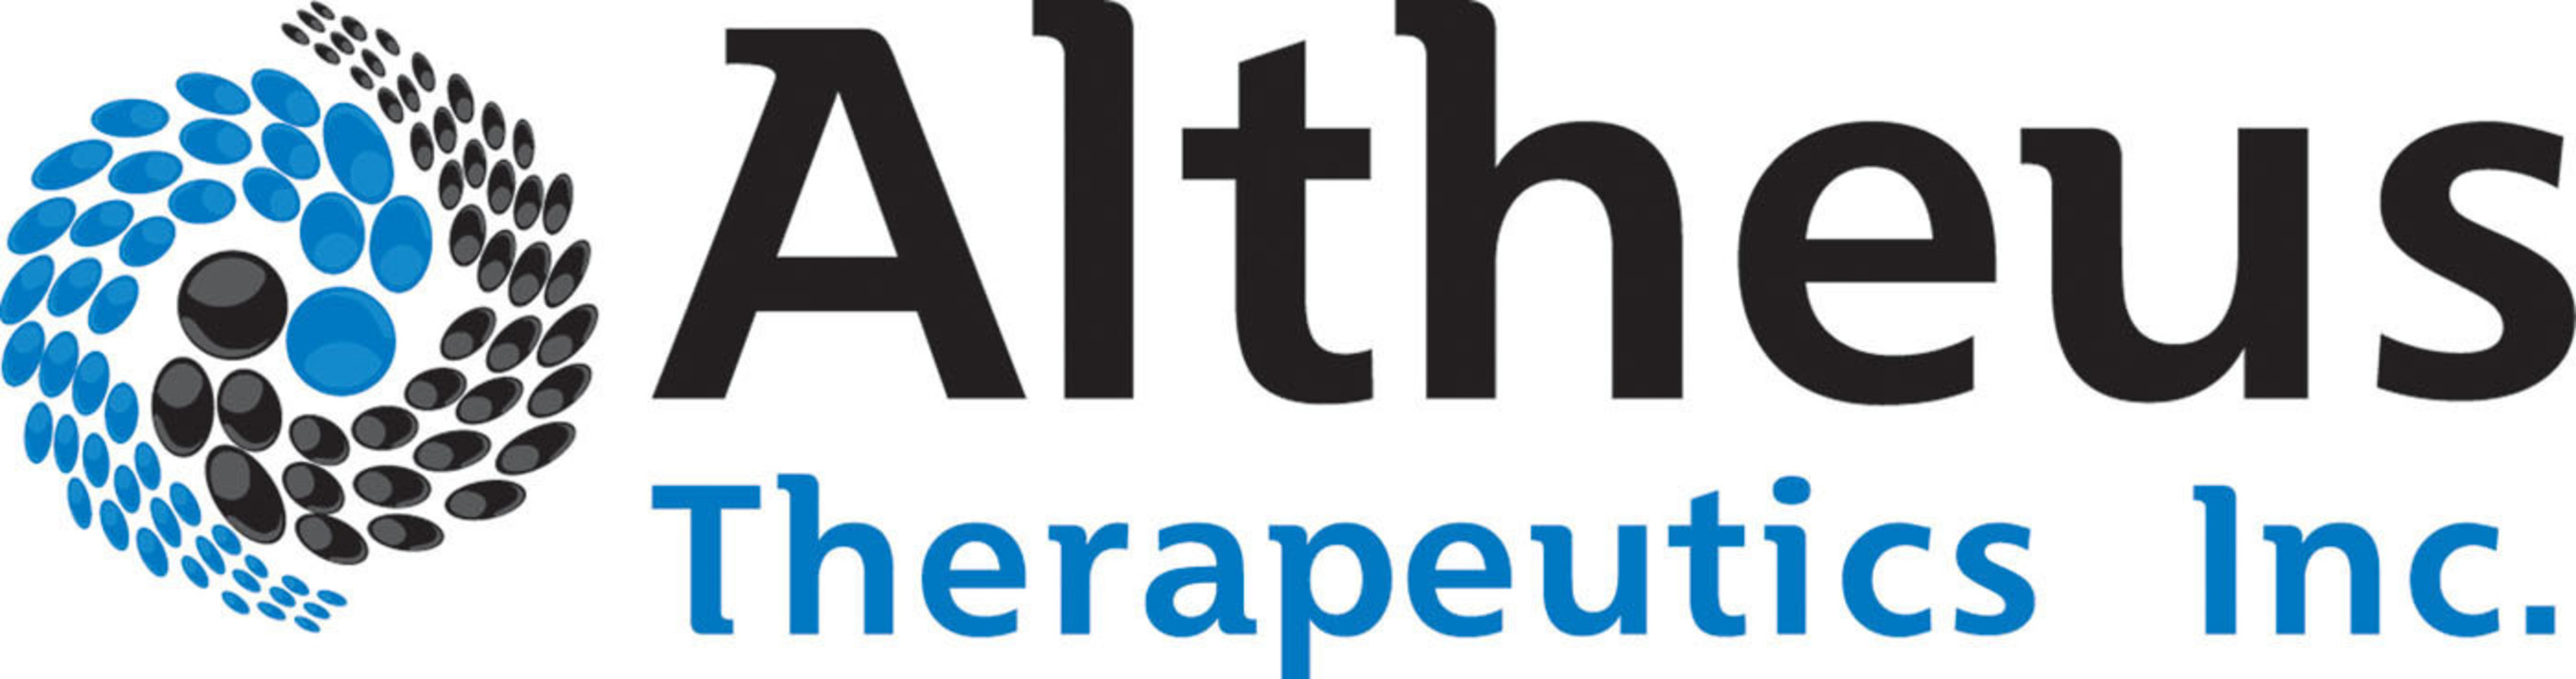 Altheus Therapeutics completes enrollment in ZA201 Phase 2 trial for ulcerative colitis. (PRNewsFoto/Altheus Therapeutics, Inc.) (PRNewsFoto/ALTHEUS THERAPEUTICS_ INC_)